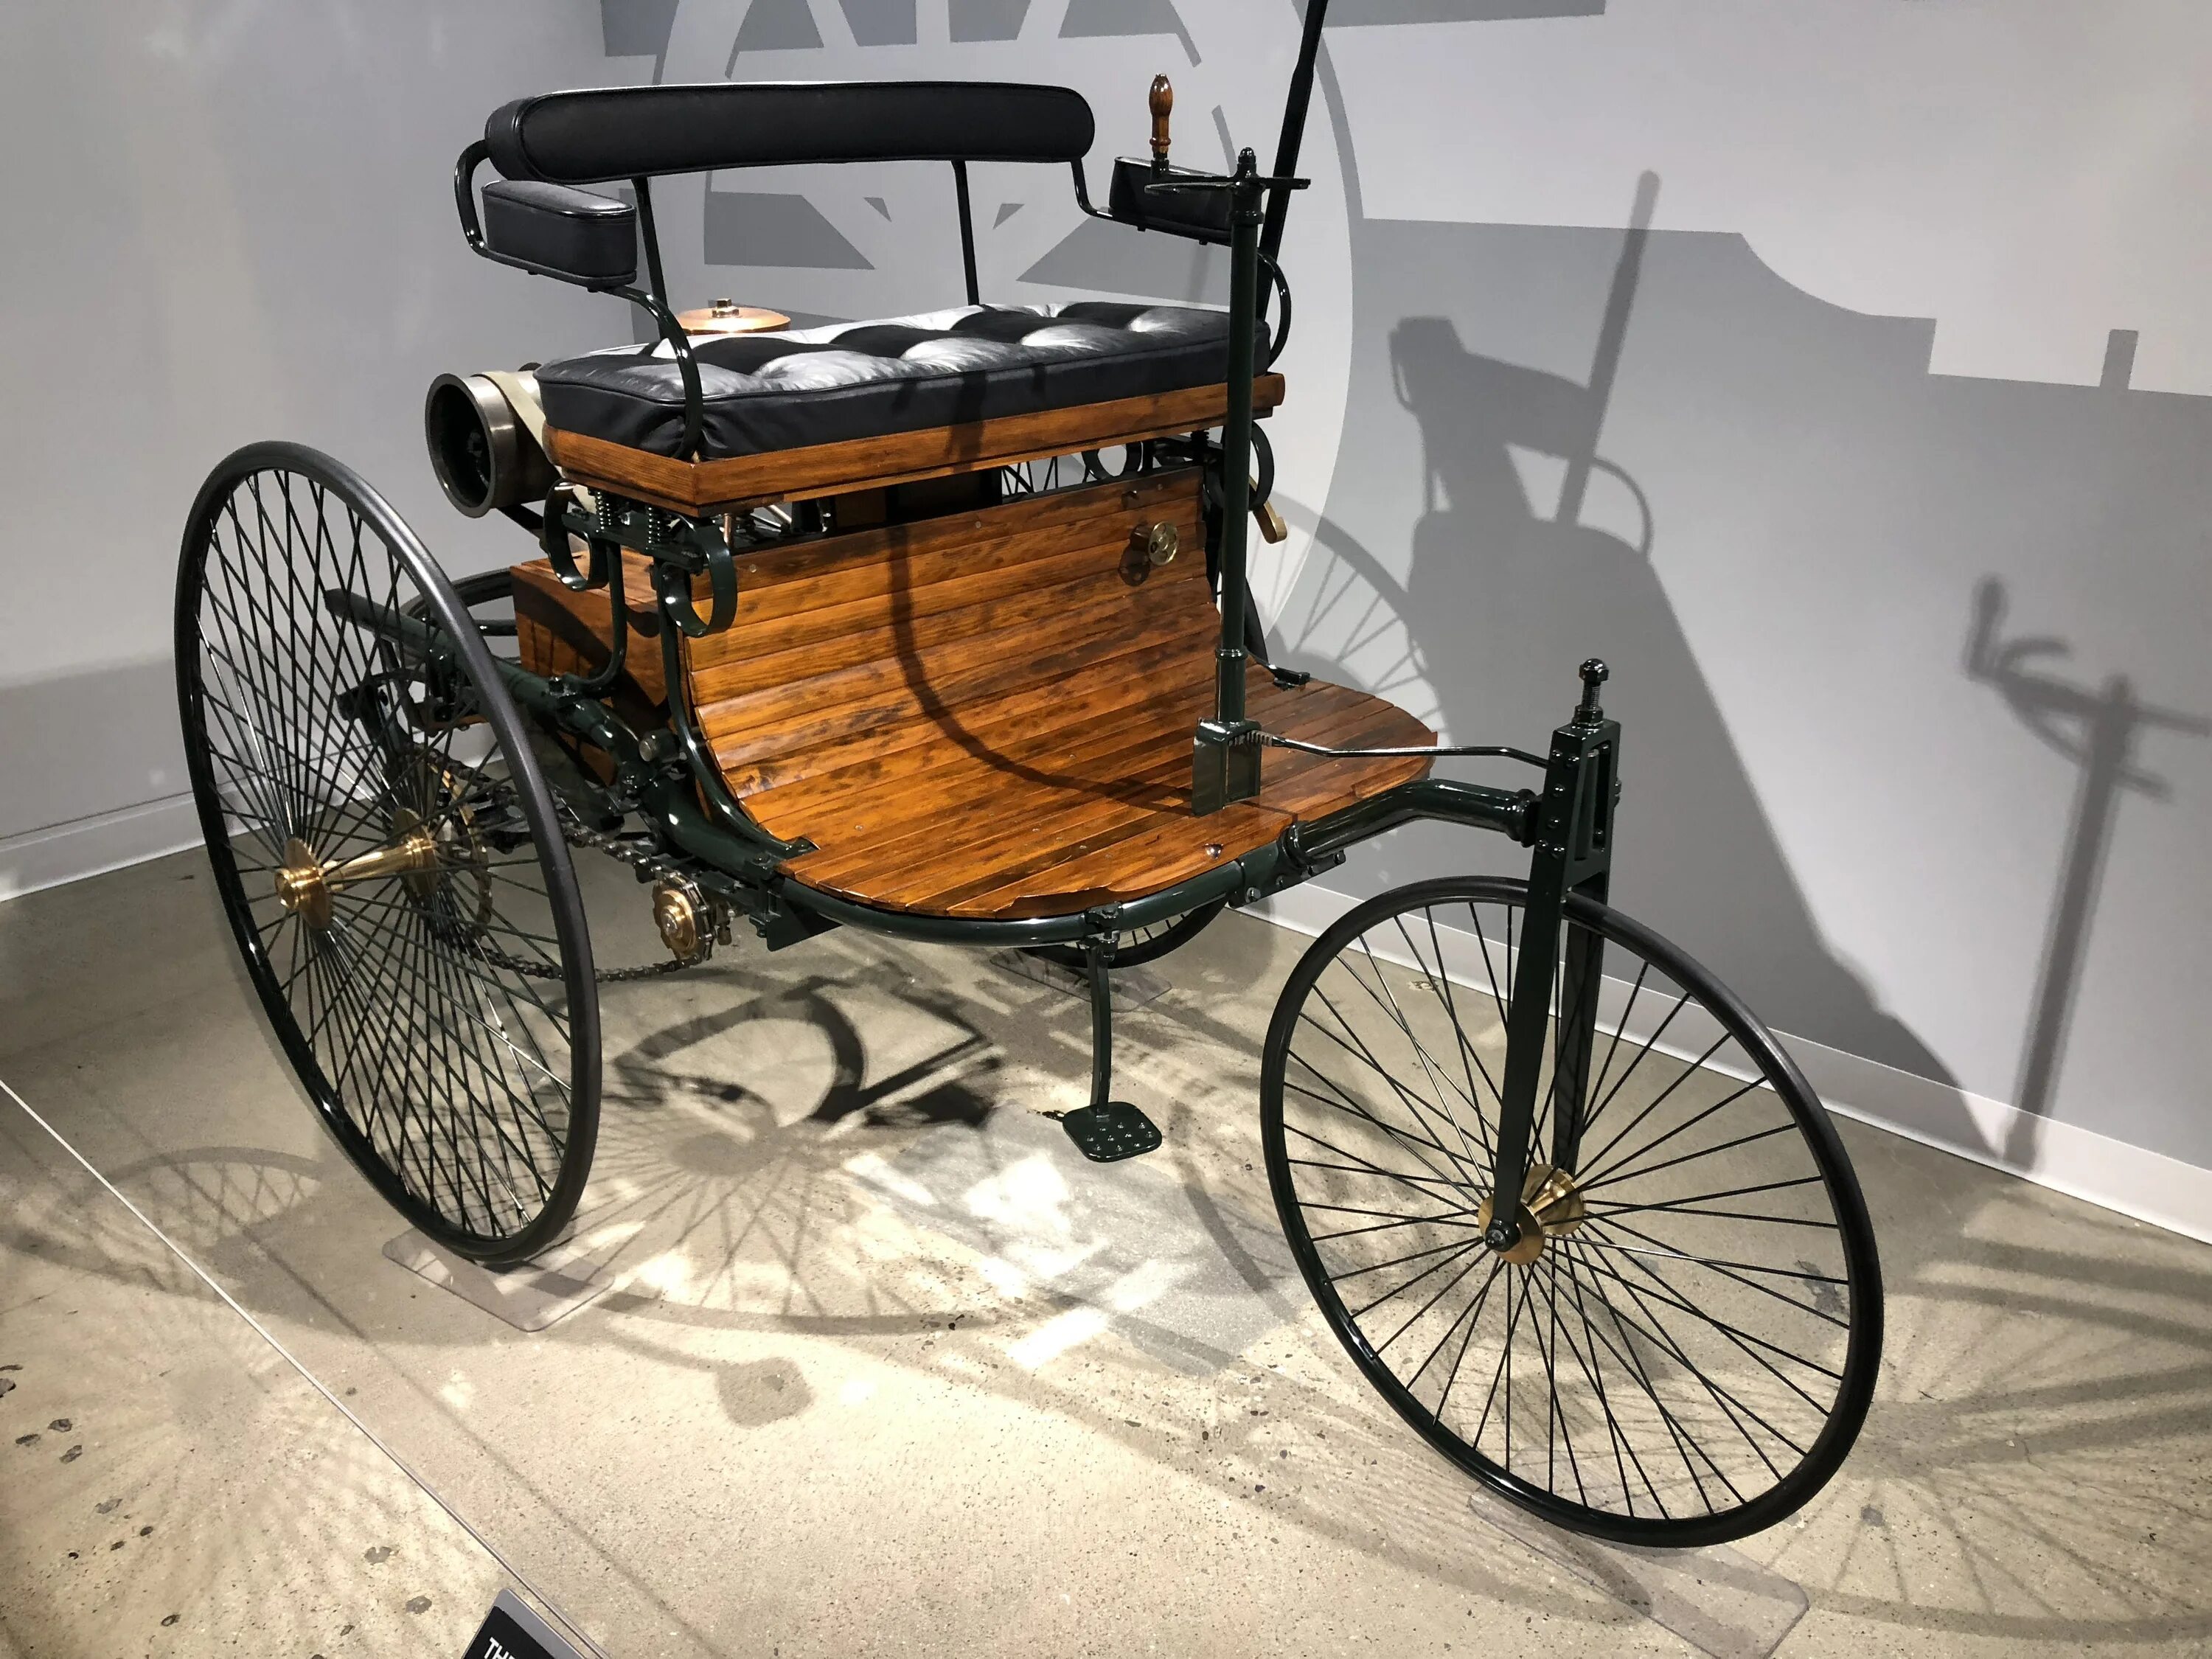 Есть машину 1. Карл Бенц изобретения. Карл Бенц изобрел автомобиль. Первый автомобиль в мире был изобретен Карлом Бенцем в 1886 году. Карл Бенц изобретатель первого автомобиля.